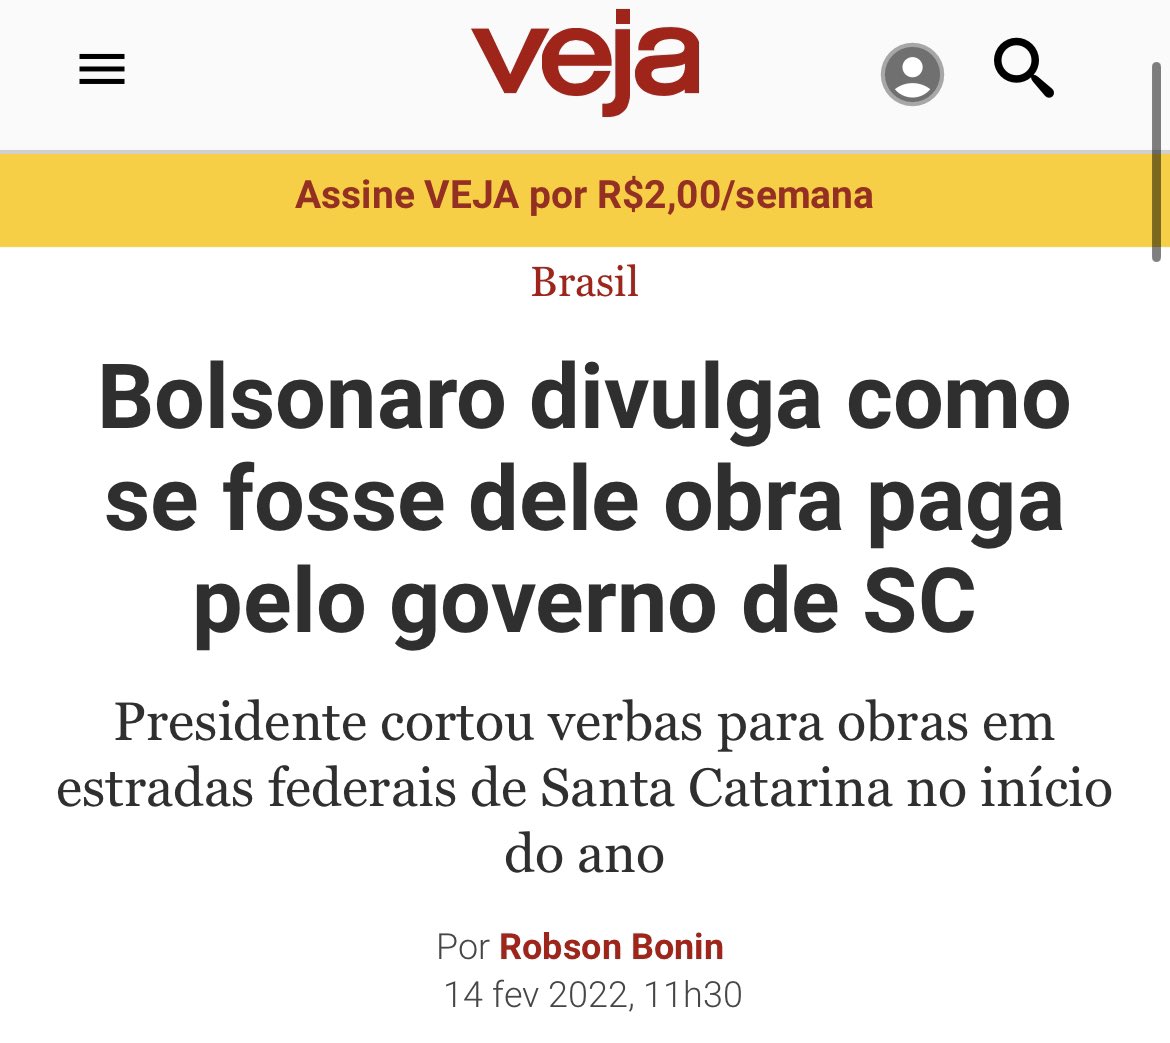 2 - Fez um vídeo dizendo que um investimento do então governador de SC, Carlos Moisés, era dele. A obra era na BR-163. Quando presidente, Bolsonaro deixou nossas rodovias abandonadas.